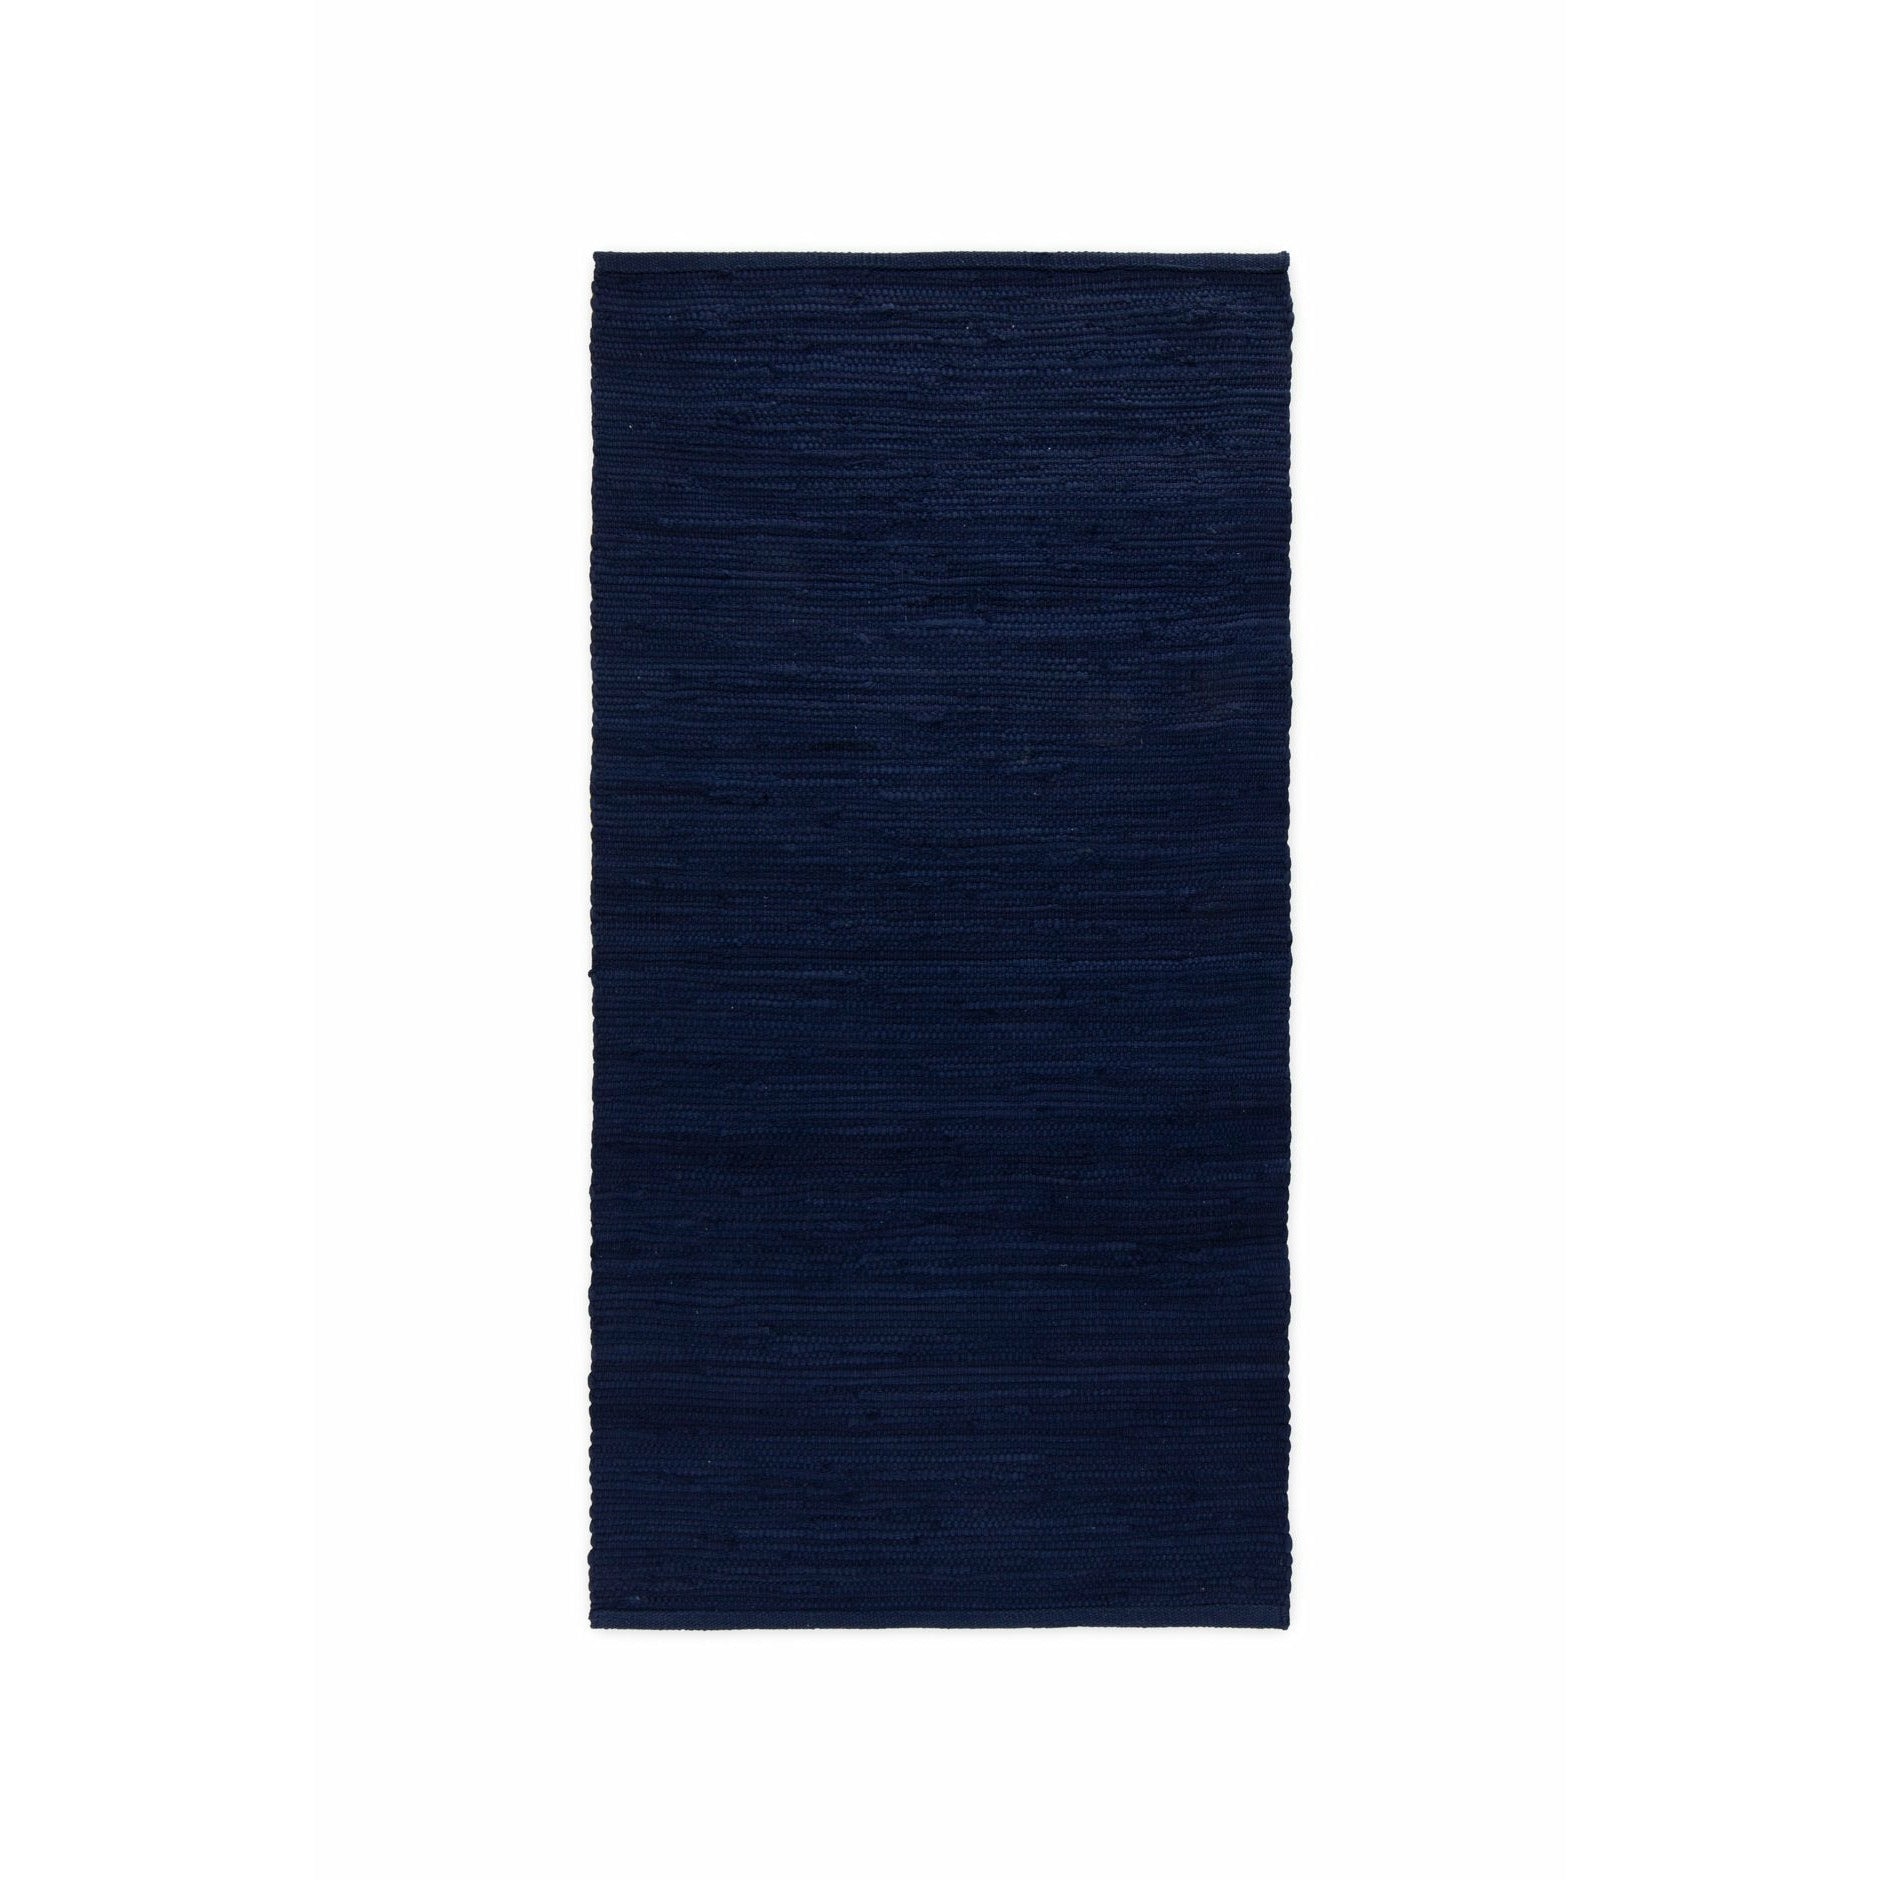 Rug Solid Bomullsmatta djup hav blått, 75 x 300 cm